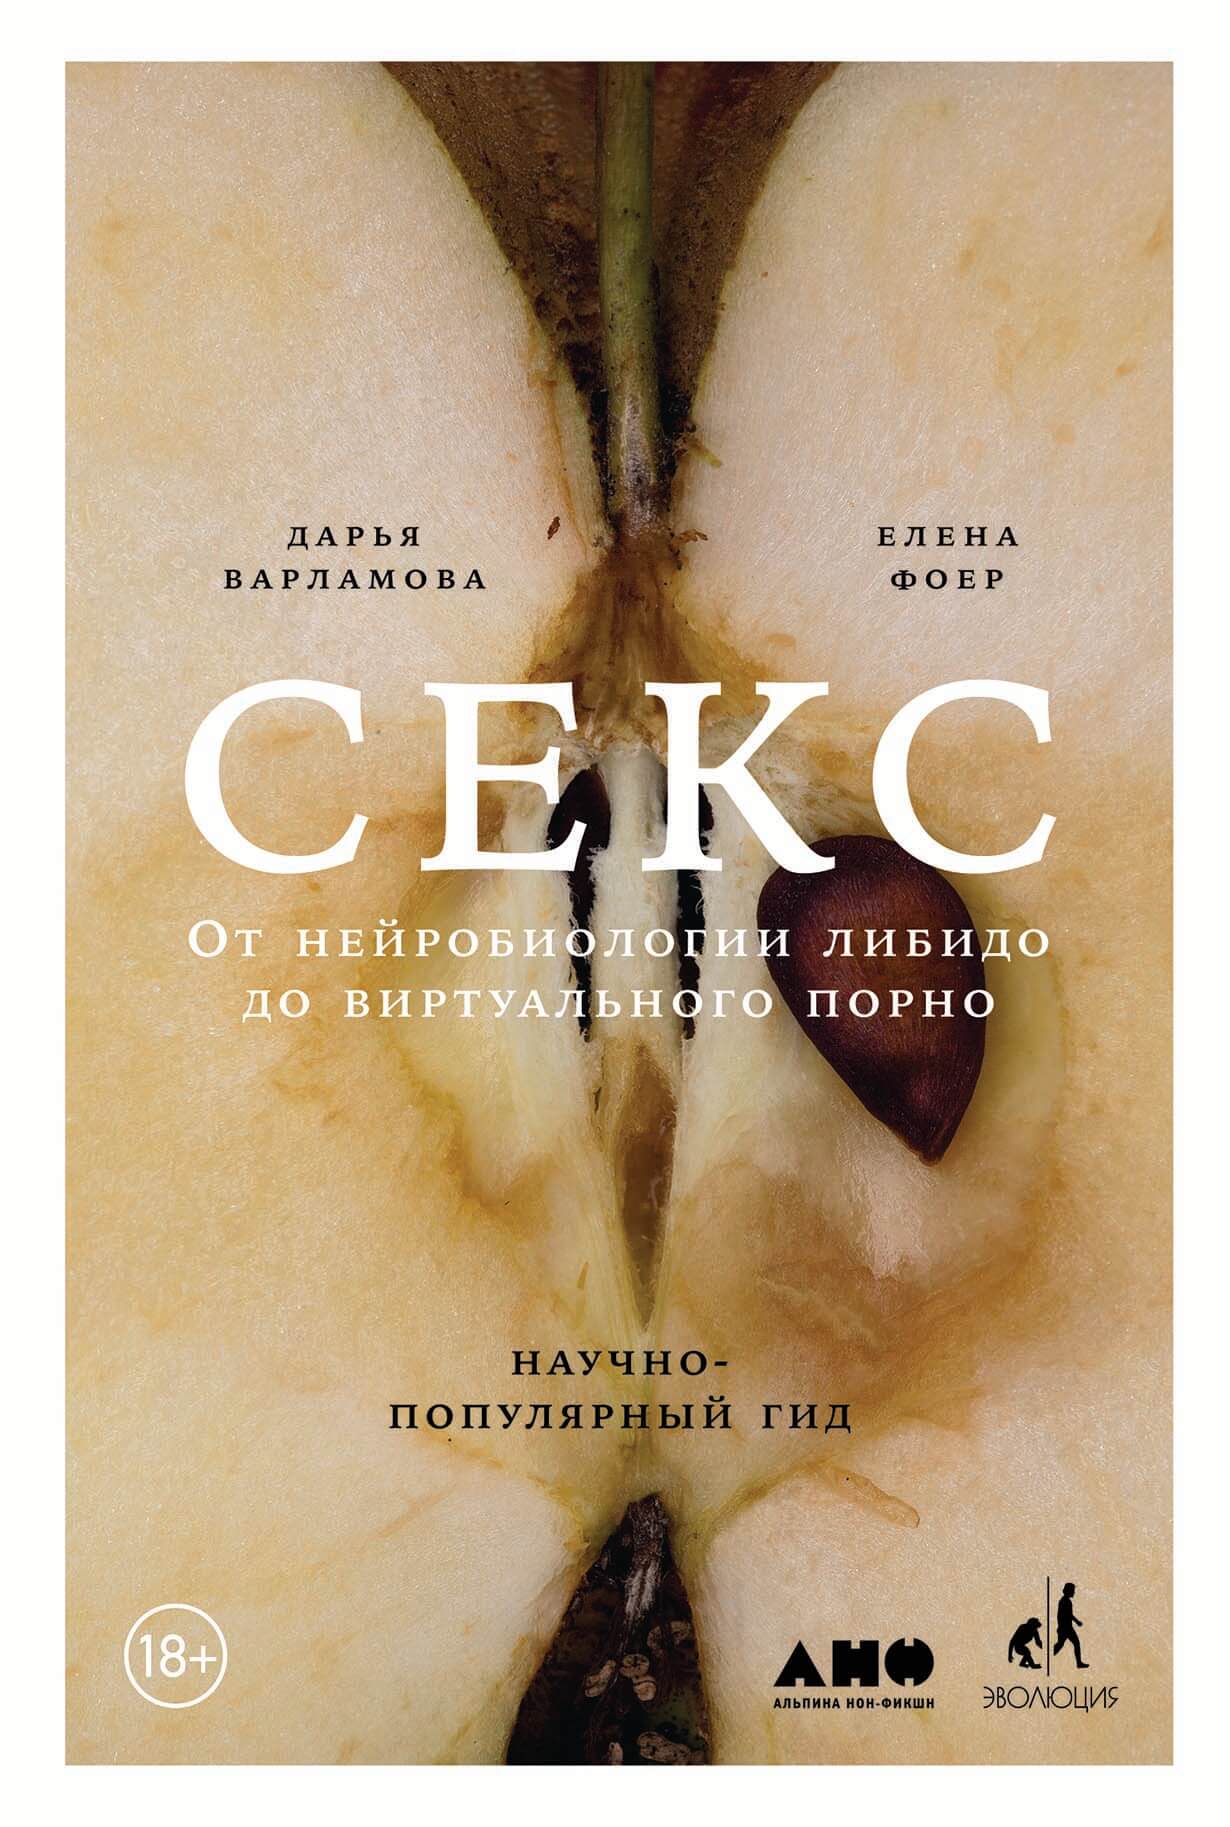 Секс: От нейробиологии либидо до виртуального порно — купить книгу Фоер Елены на сайте alpinabook.ru